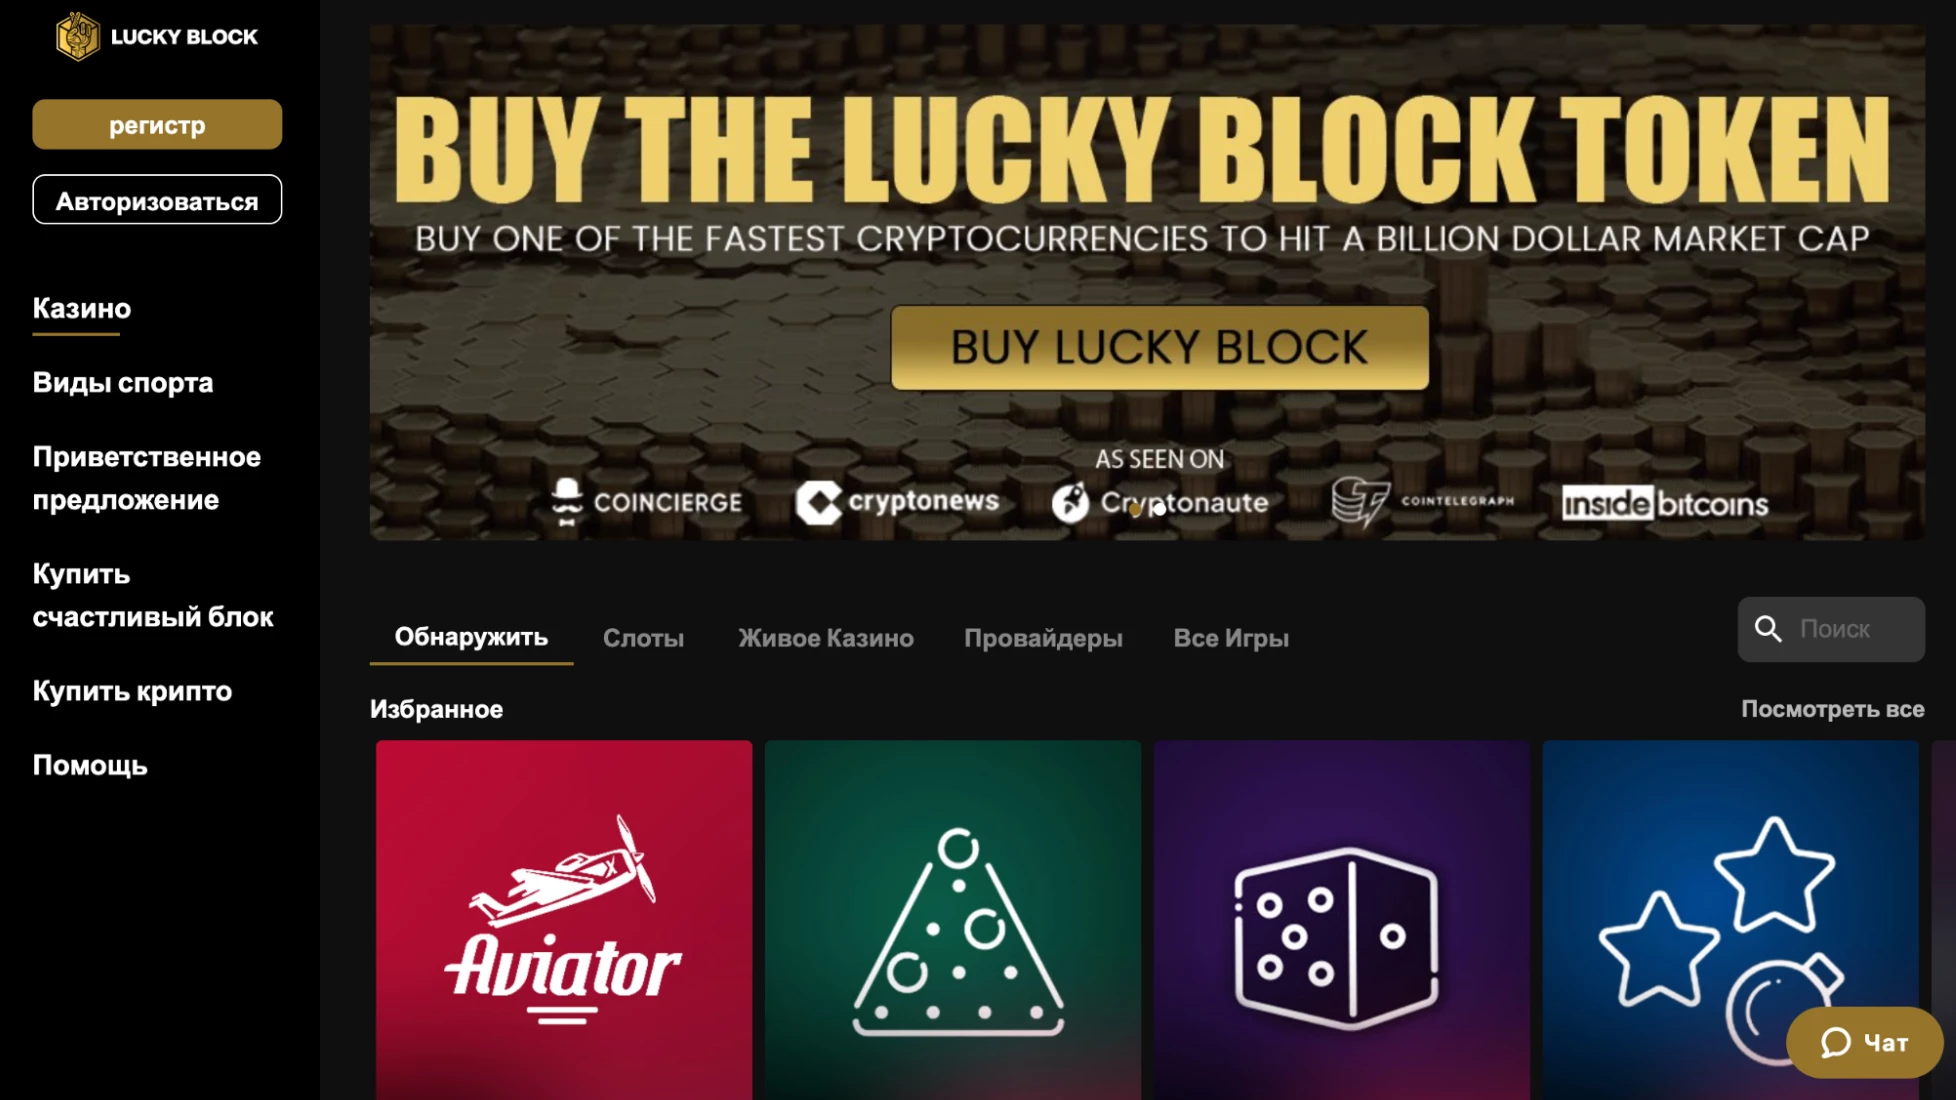 Интерфейс сайта проекта Lucky Block